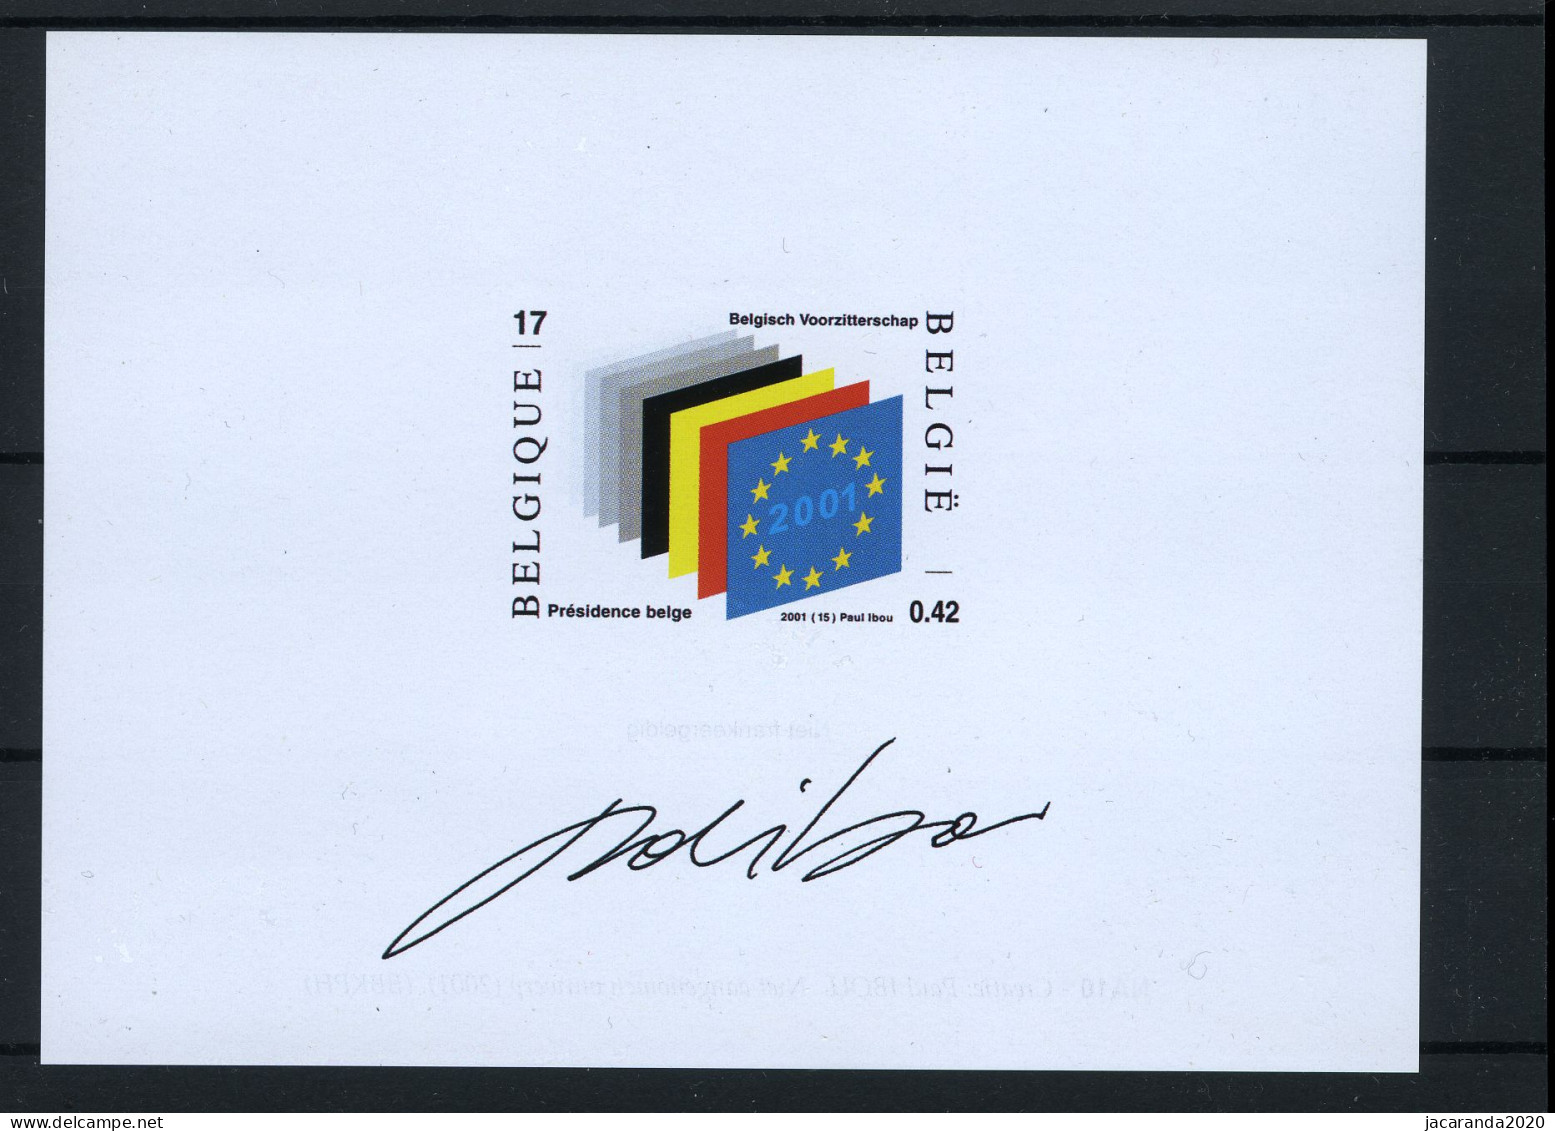 België NA10-NL - Belgisch Voorzitterschap Van De Europese Unie - Union Européenne - Paul Ibou - 2002 - Niet-aangenomen Ontwerpen [NA]